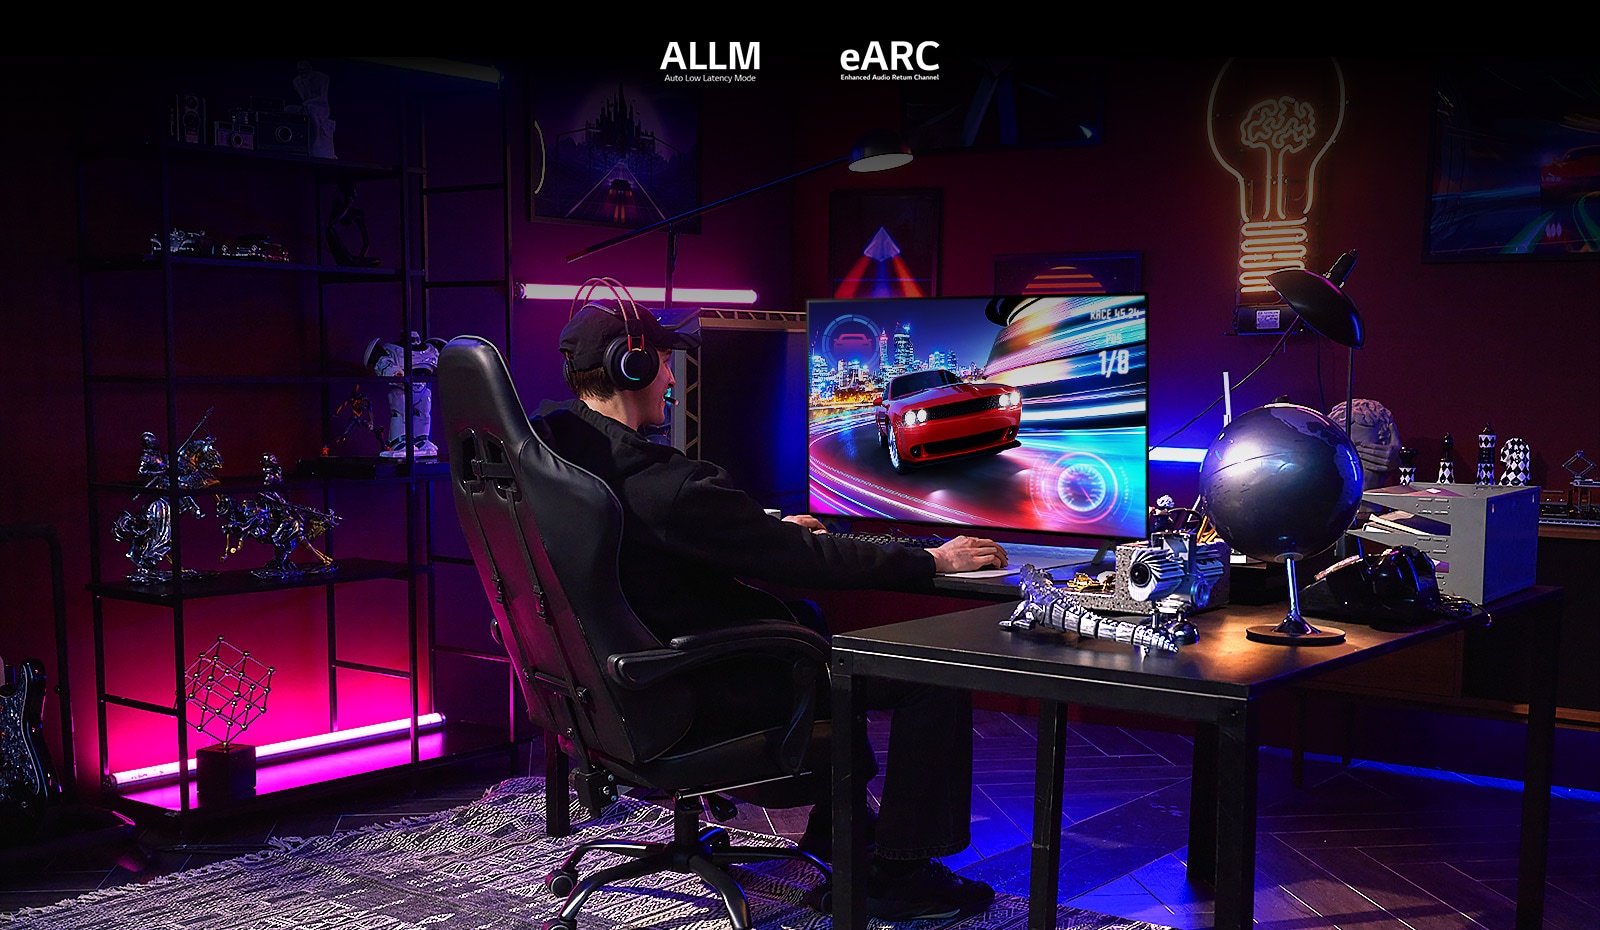 Mężczyzna gra w grę samochodową w pokoju gier z różowym, niebieskim i fioletowym oświetleniem RGB oraz kolekcją figurek.